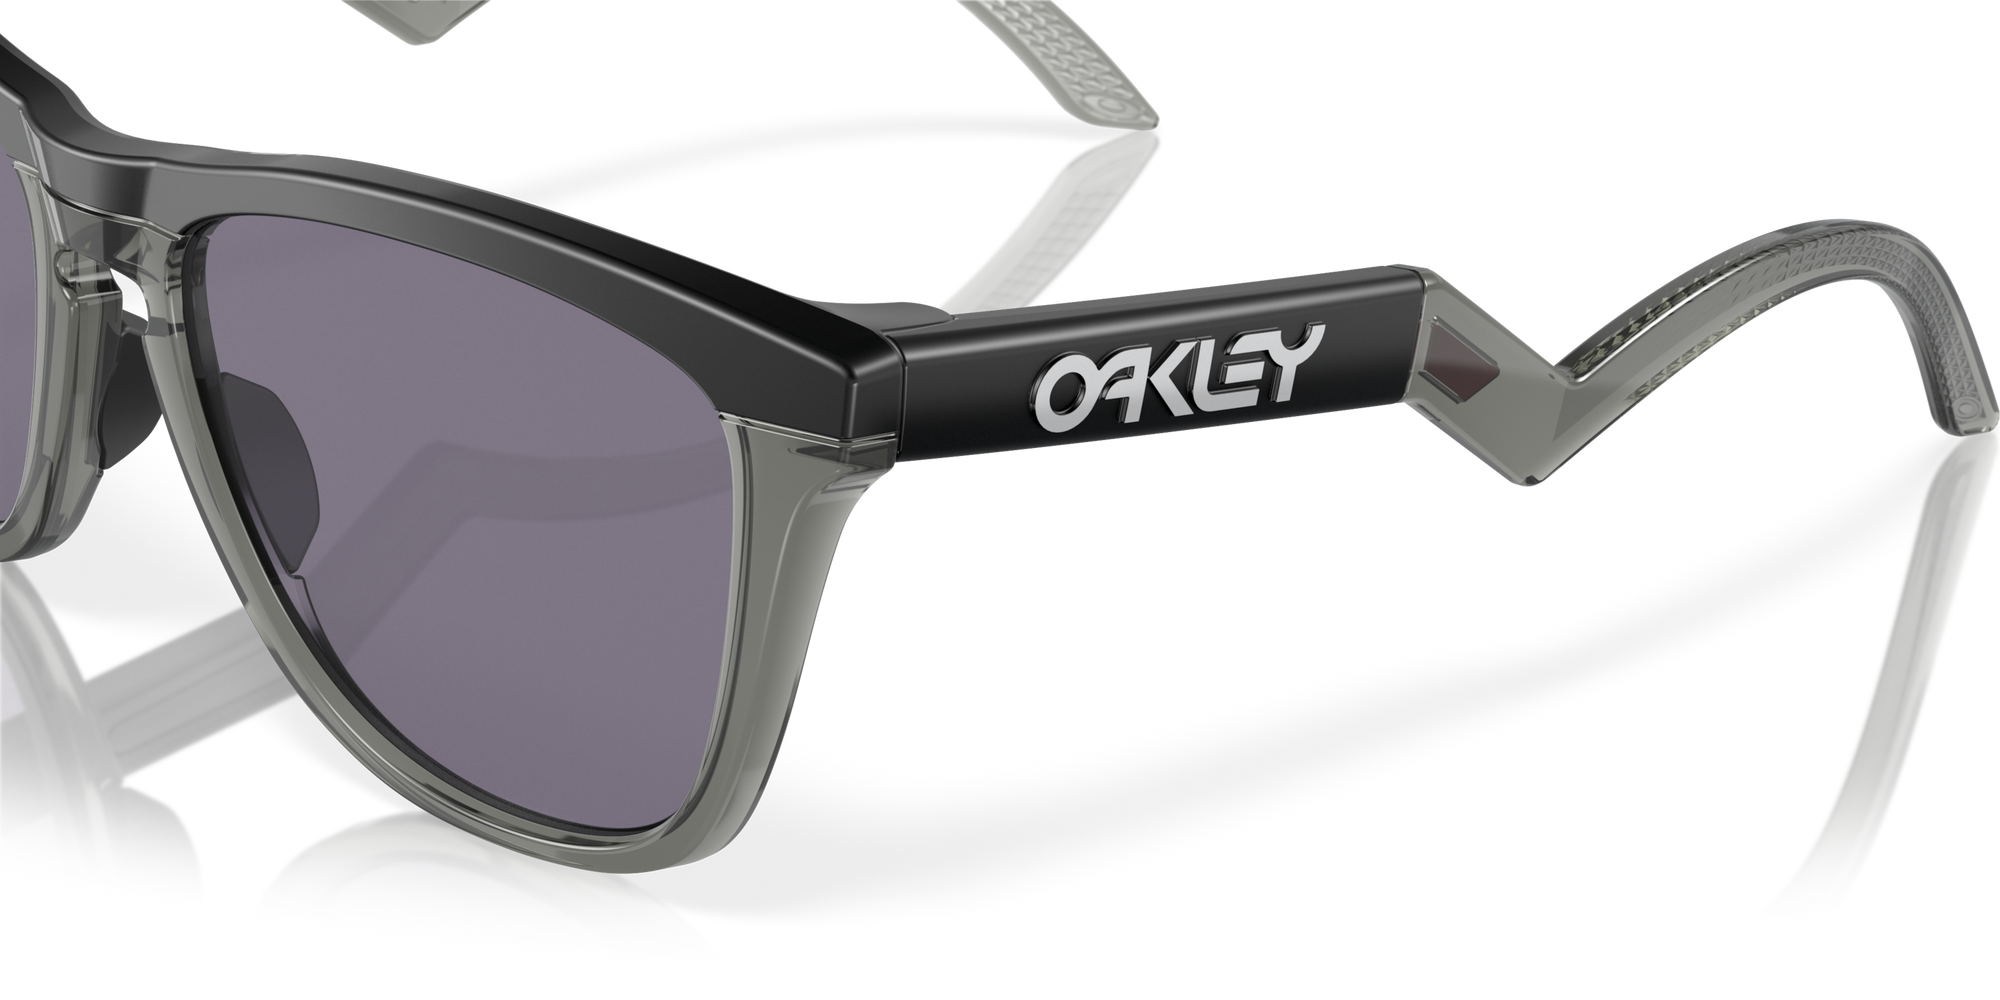 Frogskins Hybrid Sunglasses Matte Black - Prizm Grey Lens